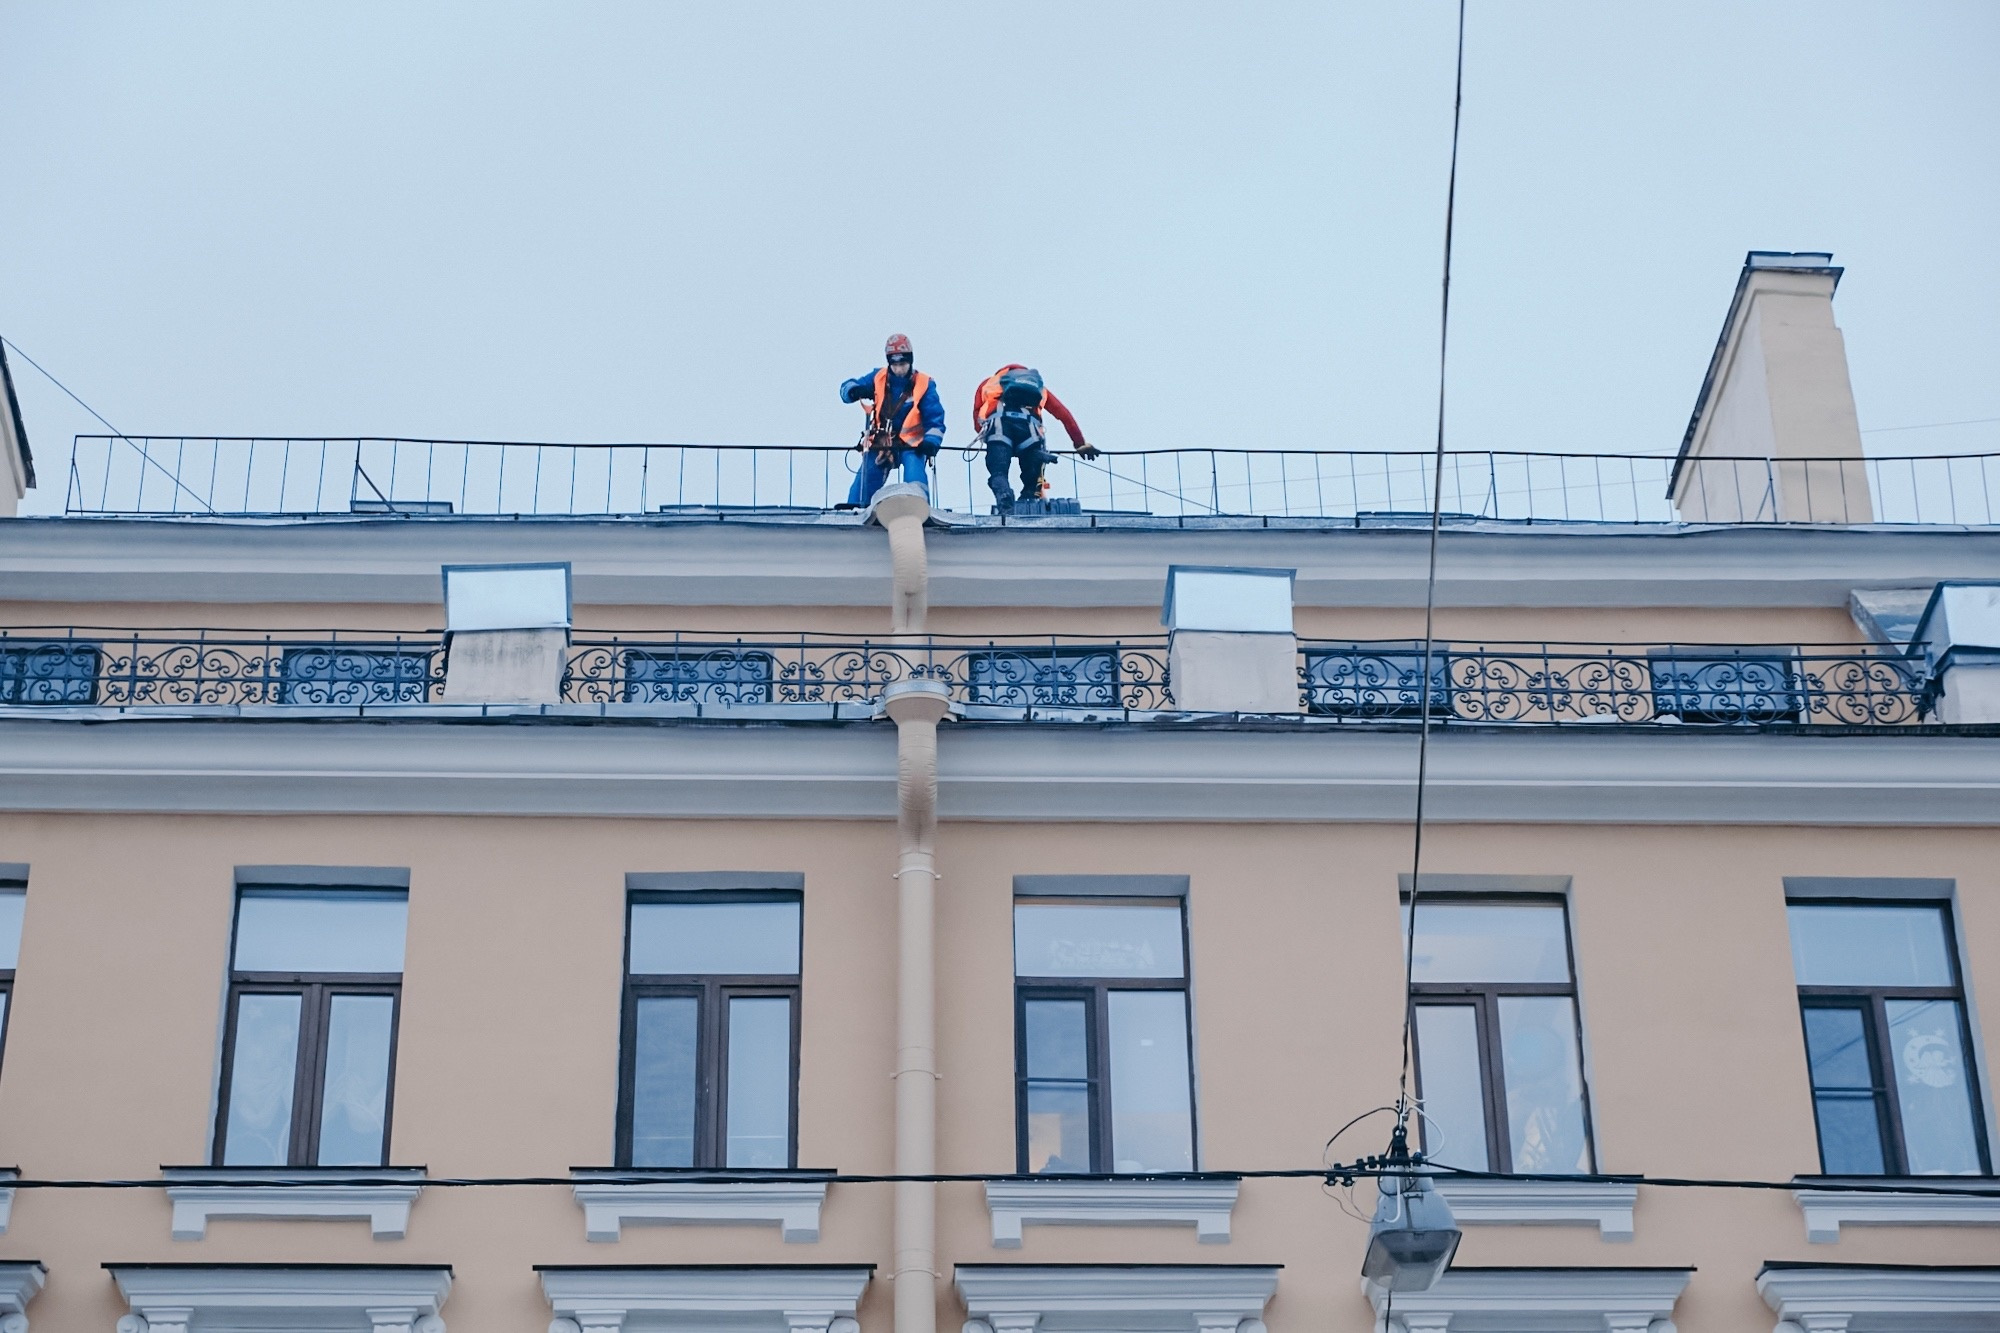 Беглов: сроки вывоза снега в Петербурге увеличиваются. Коммунальщики ушли чистить крыши